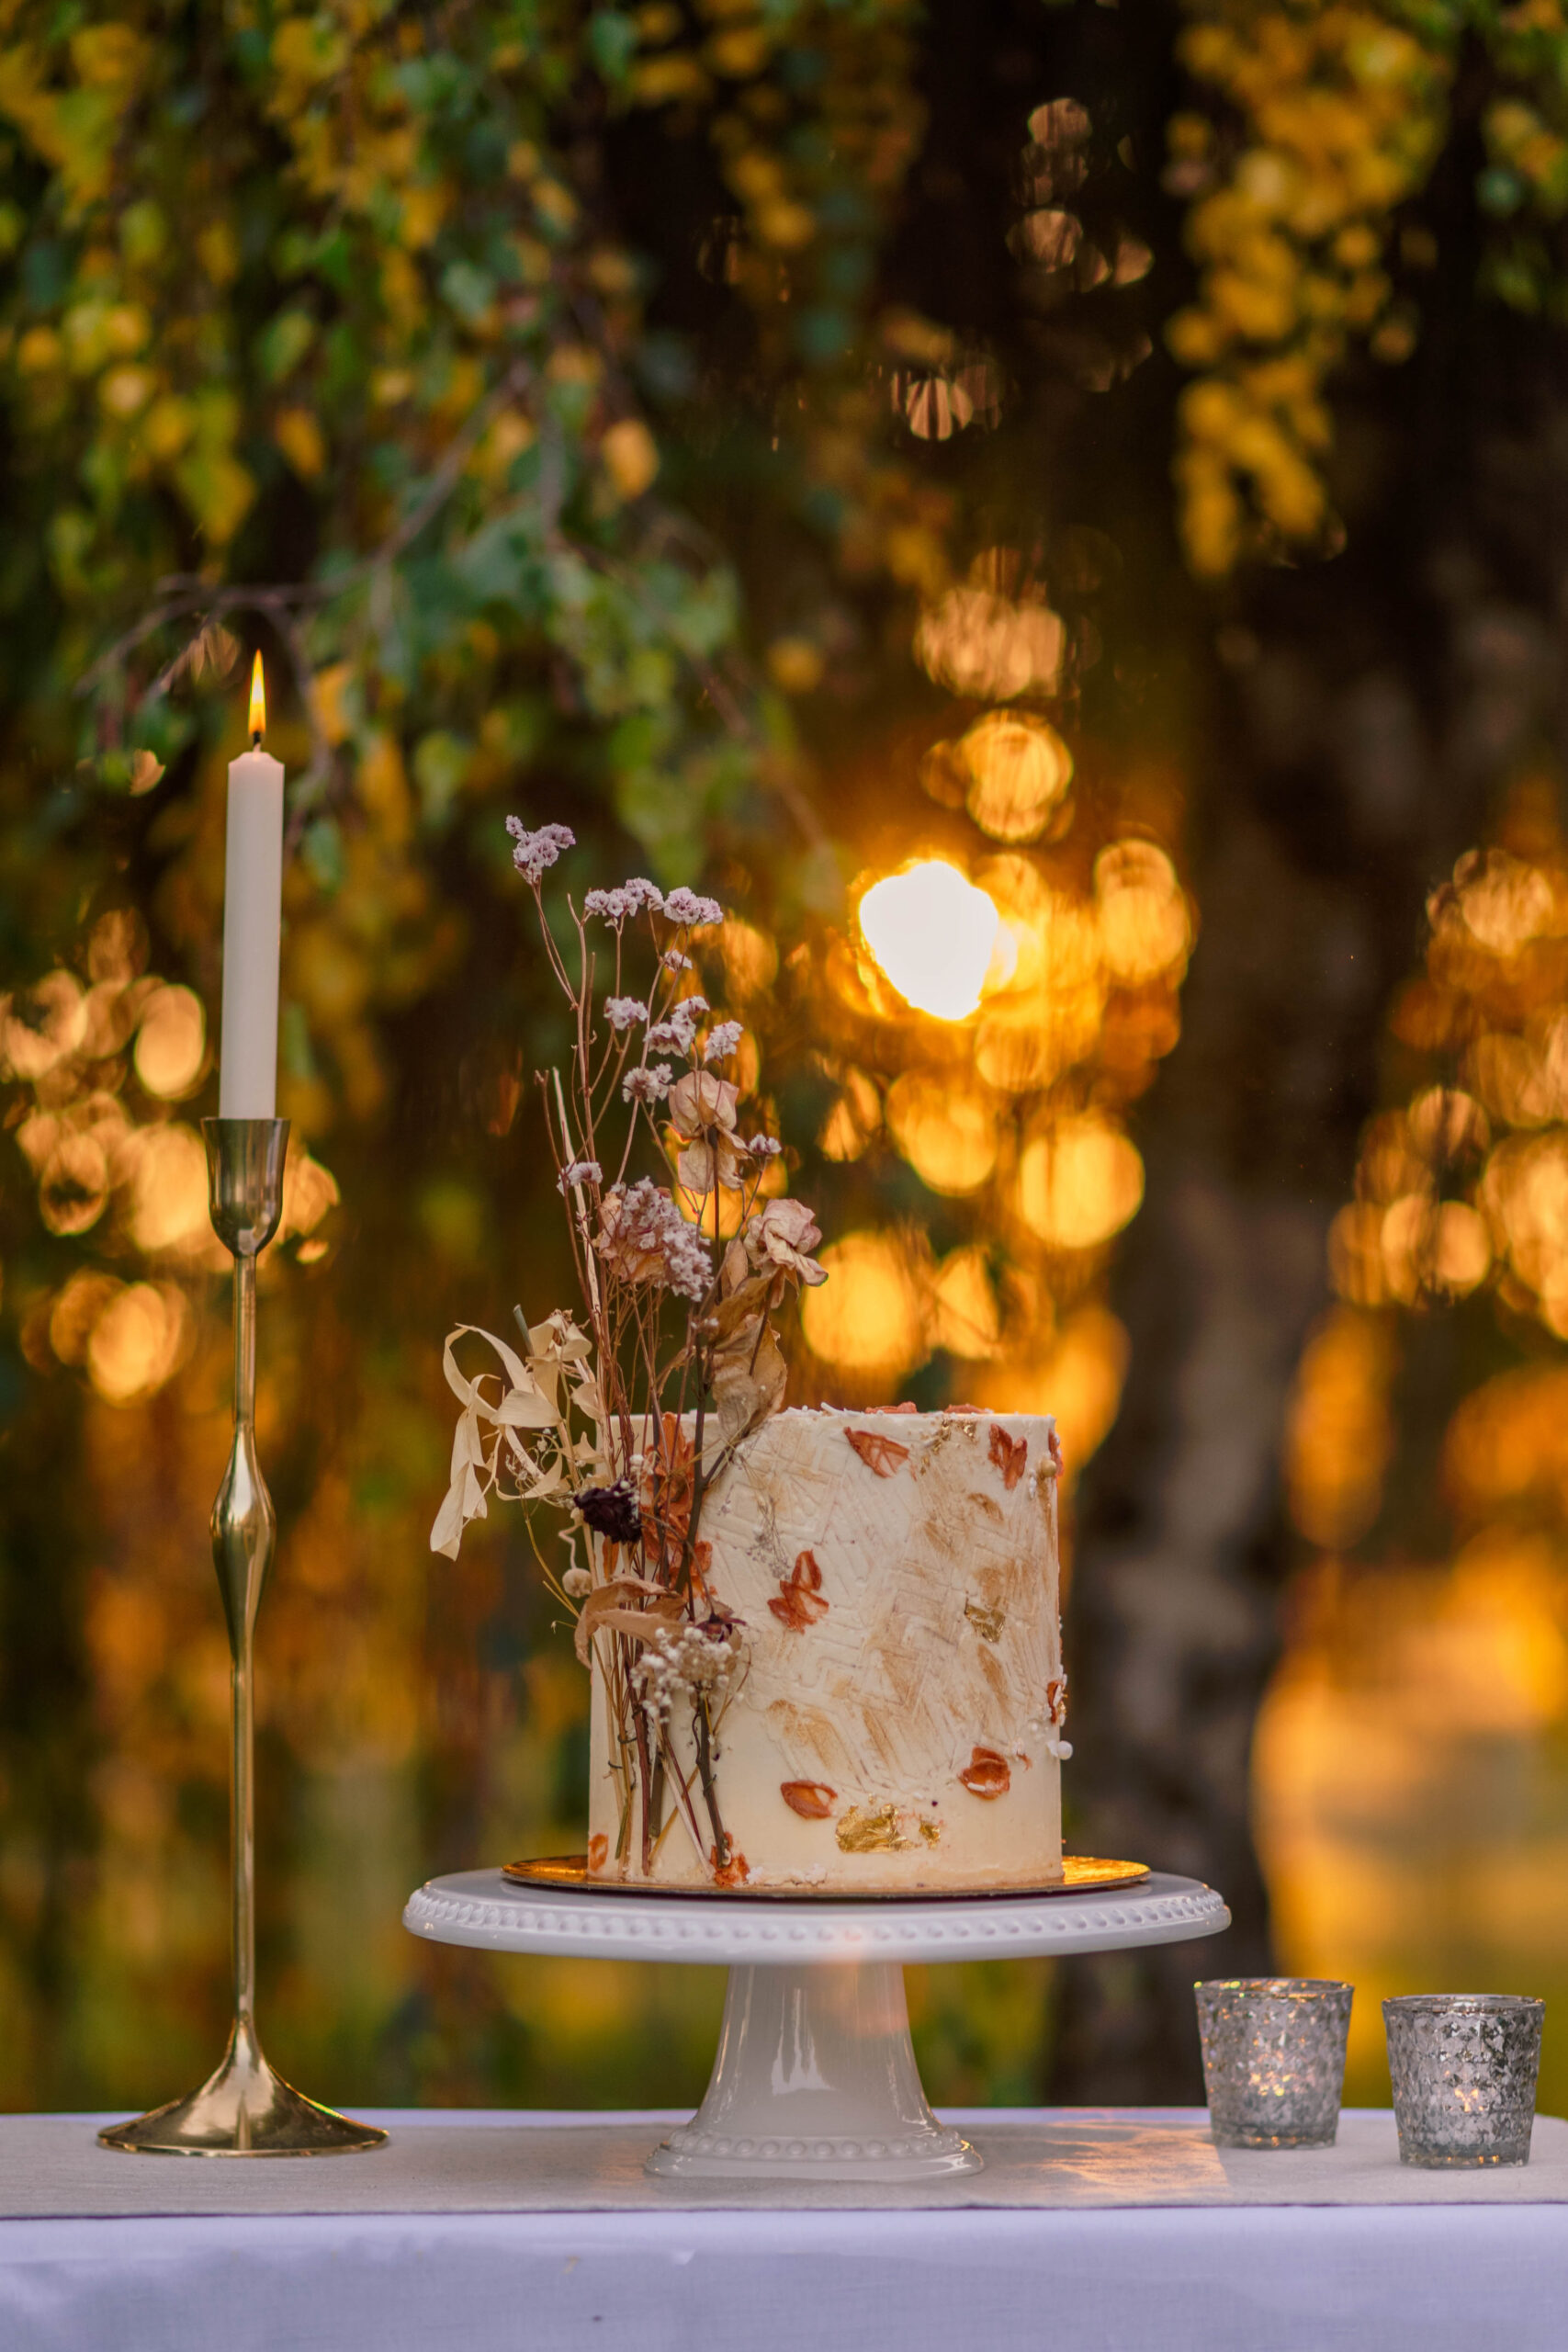 Wedding cake in golden glow